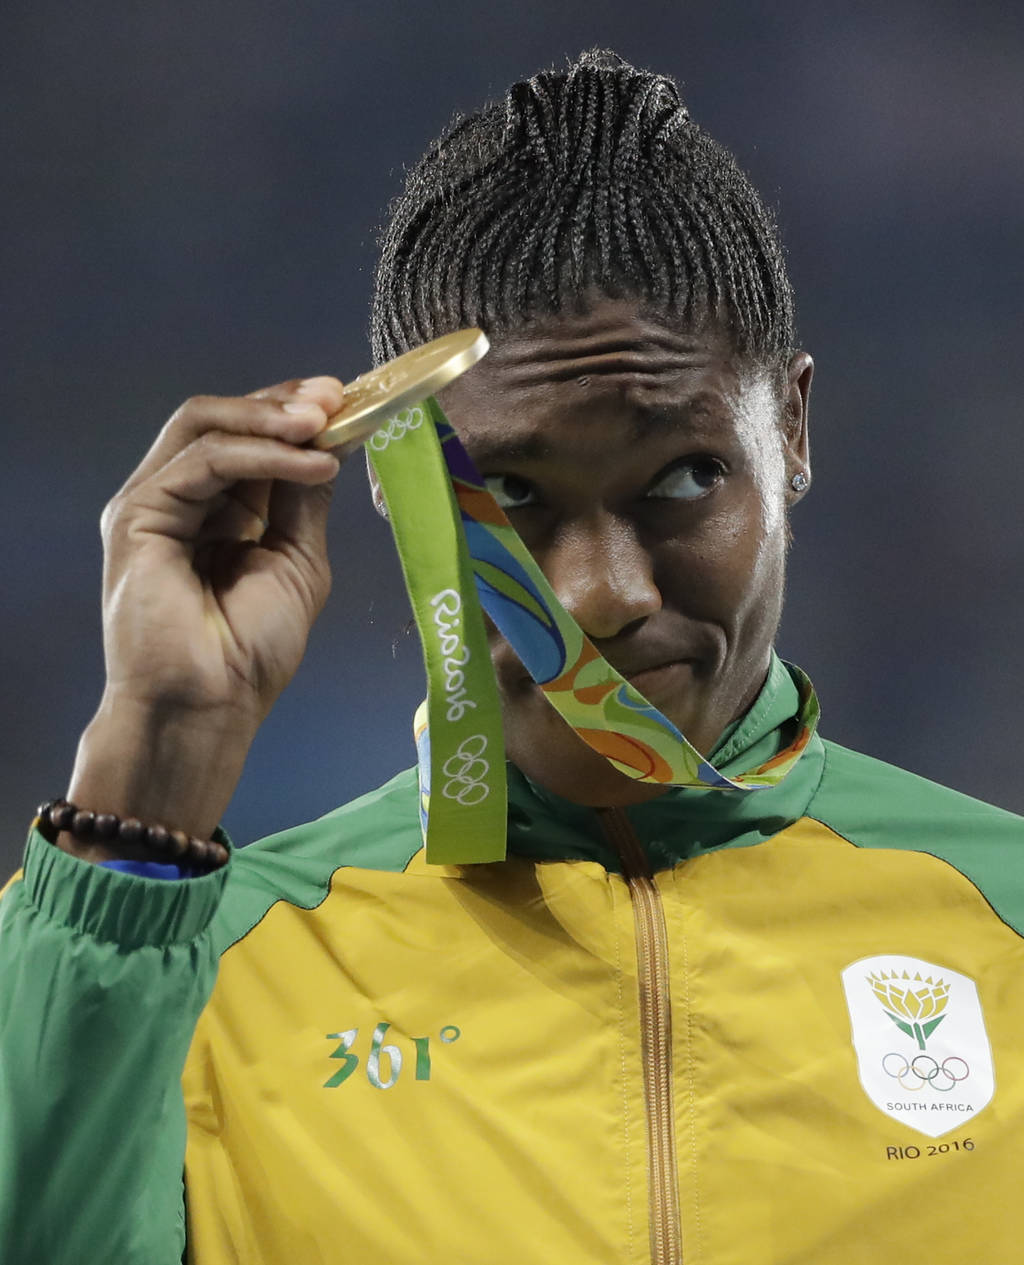 La sudafricana Caster Semenya se llevó el oro en los 800 metros. Semenya gana oro en 800 metros y aviva polémica